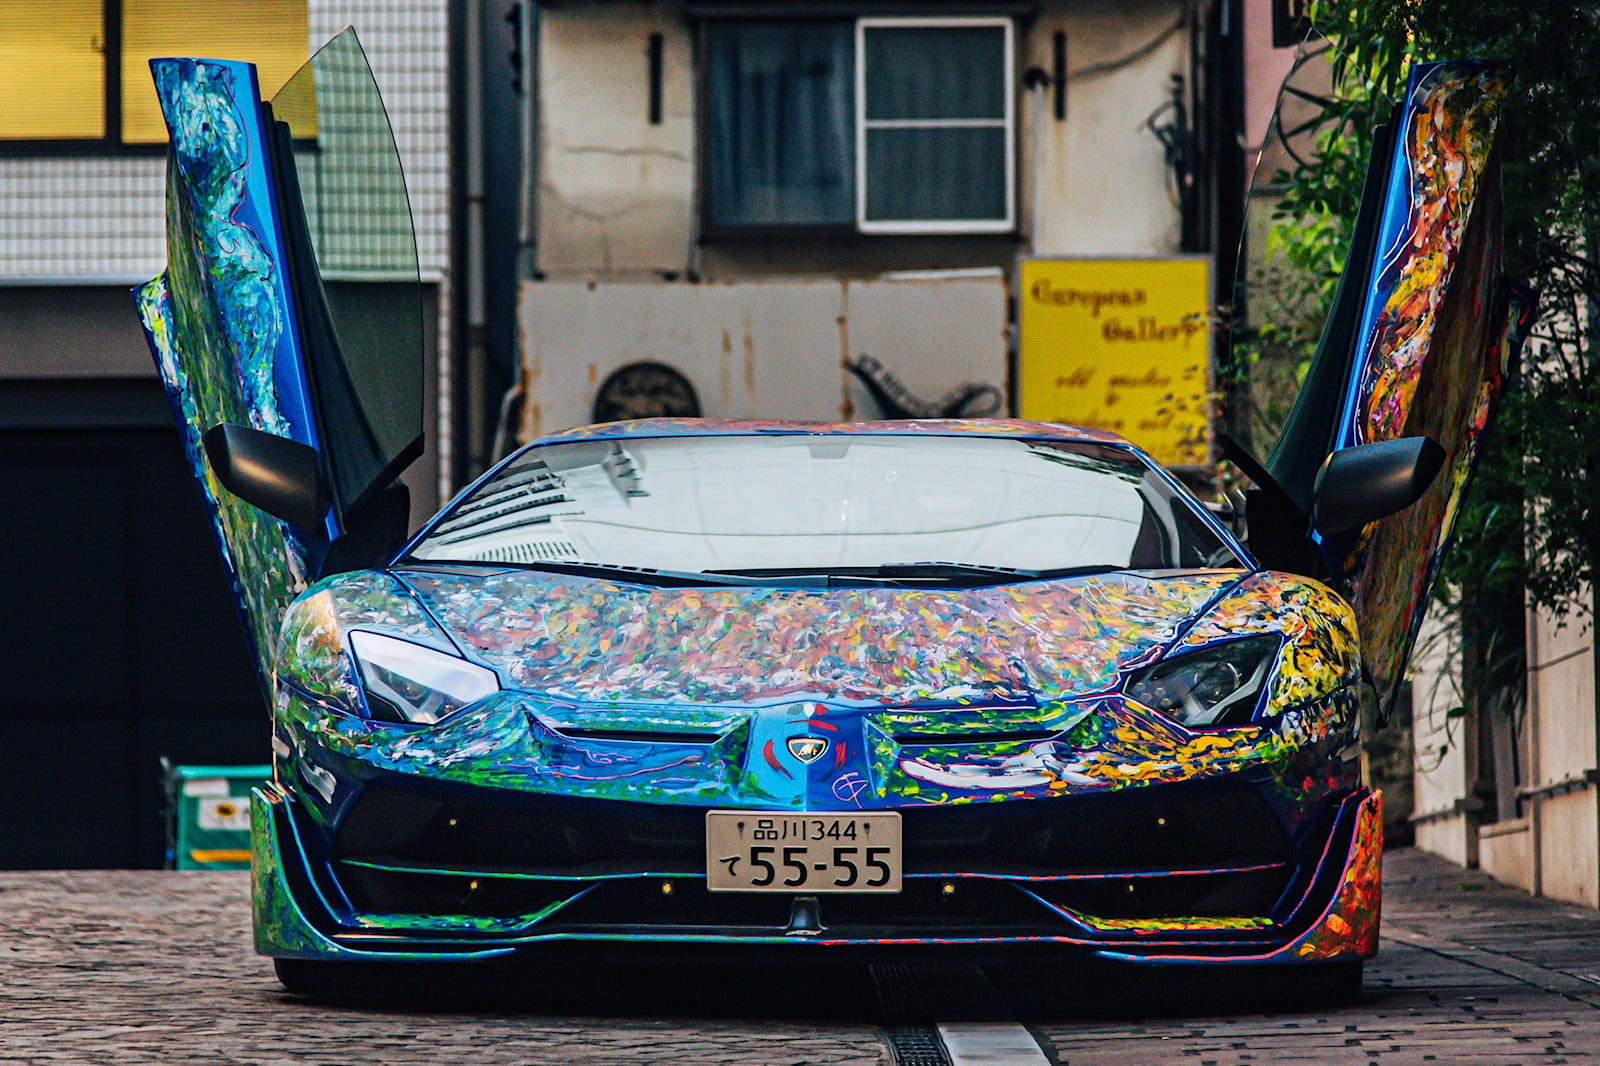 Σε εκδήλωση για υπεραυτοκίνητα στο Τόκιο, μετέτρεψε ένα αξίας 700.000 δολαρίων Lamborghini Aventador SVJ σε ζωηρόχρωμο καμβά.